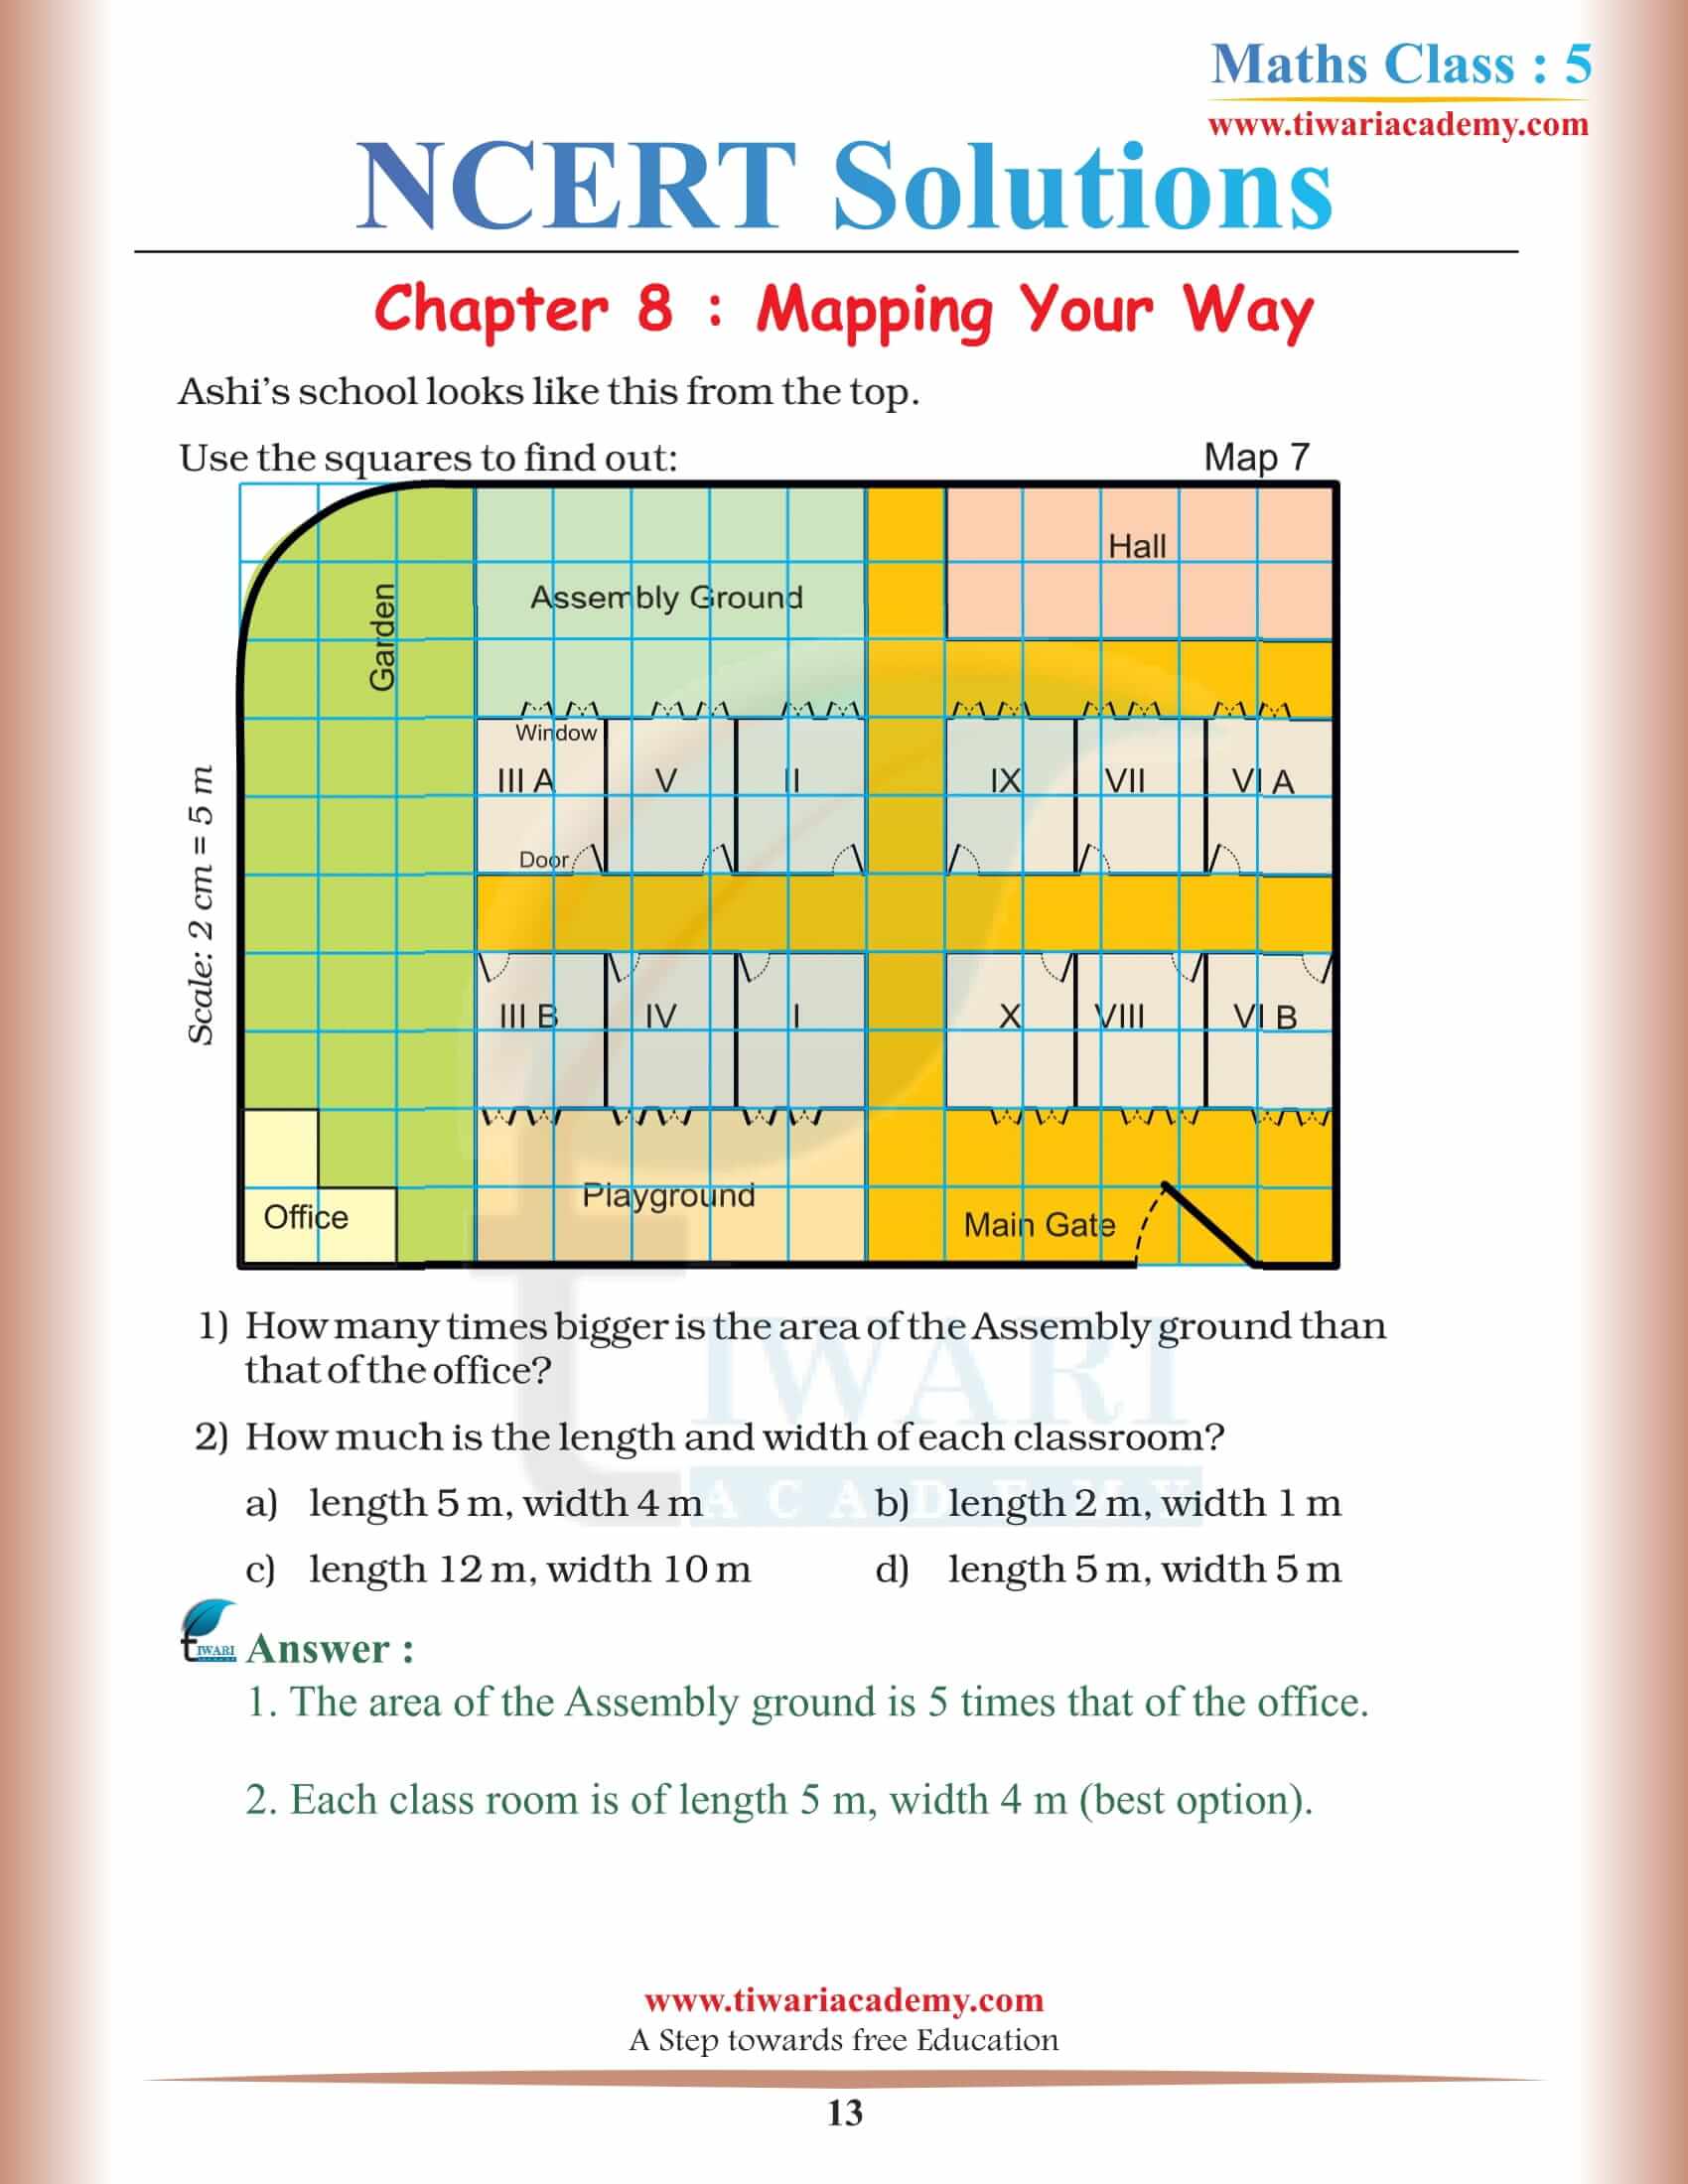 Class 5 NCERT Maths Chapter 8 Solutions